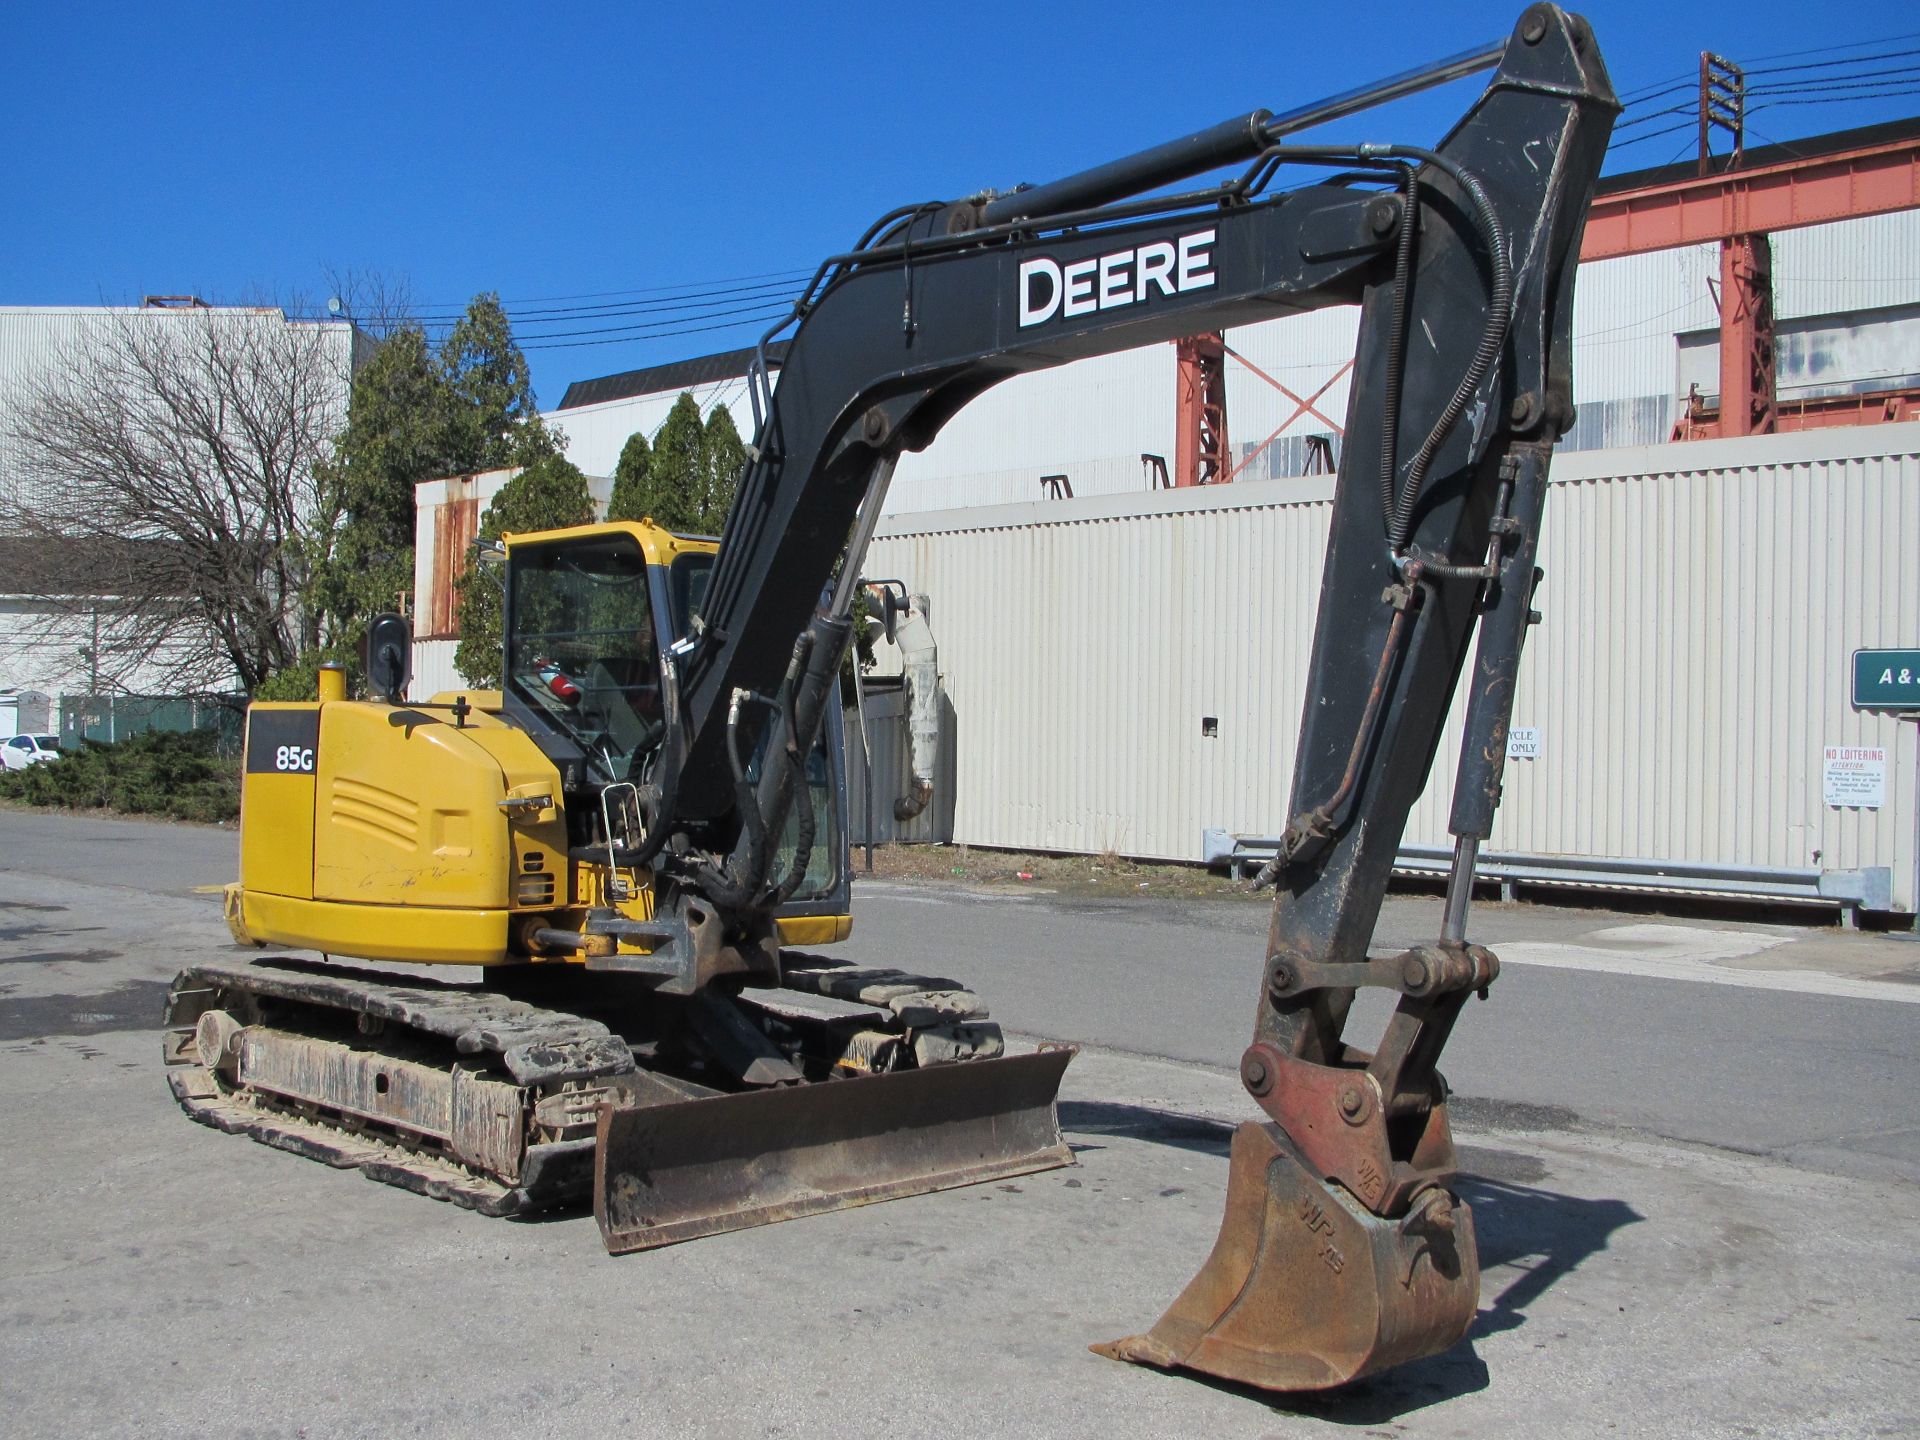 2014 John Deere 85G Excavator - Image 3 of 25